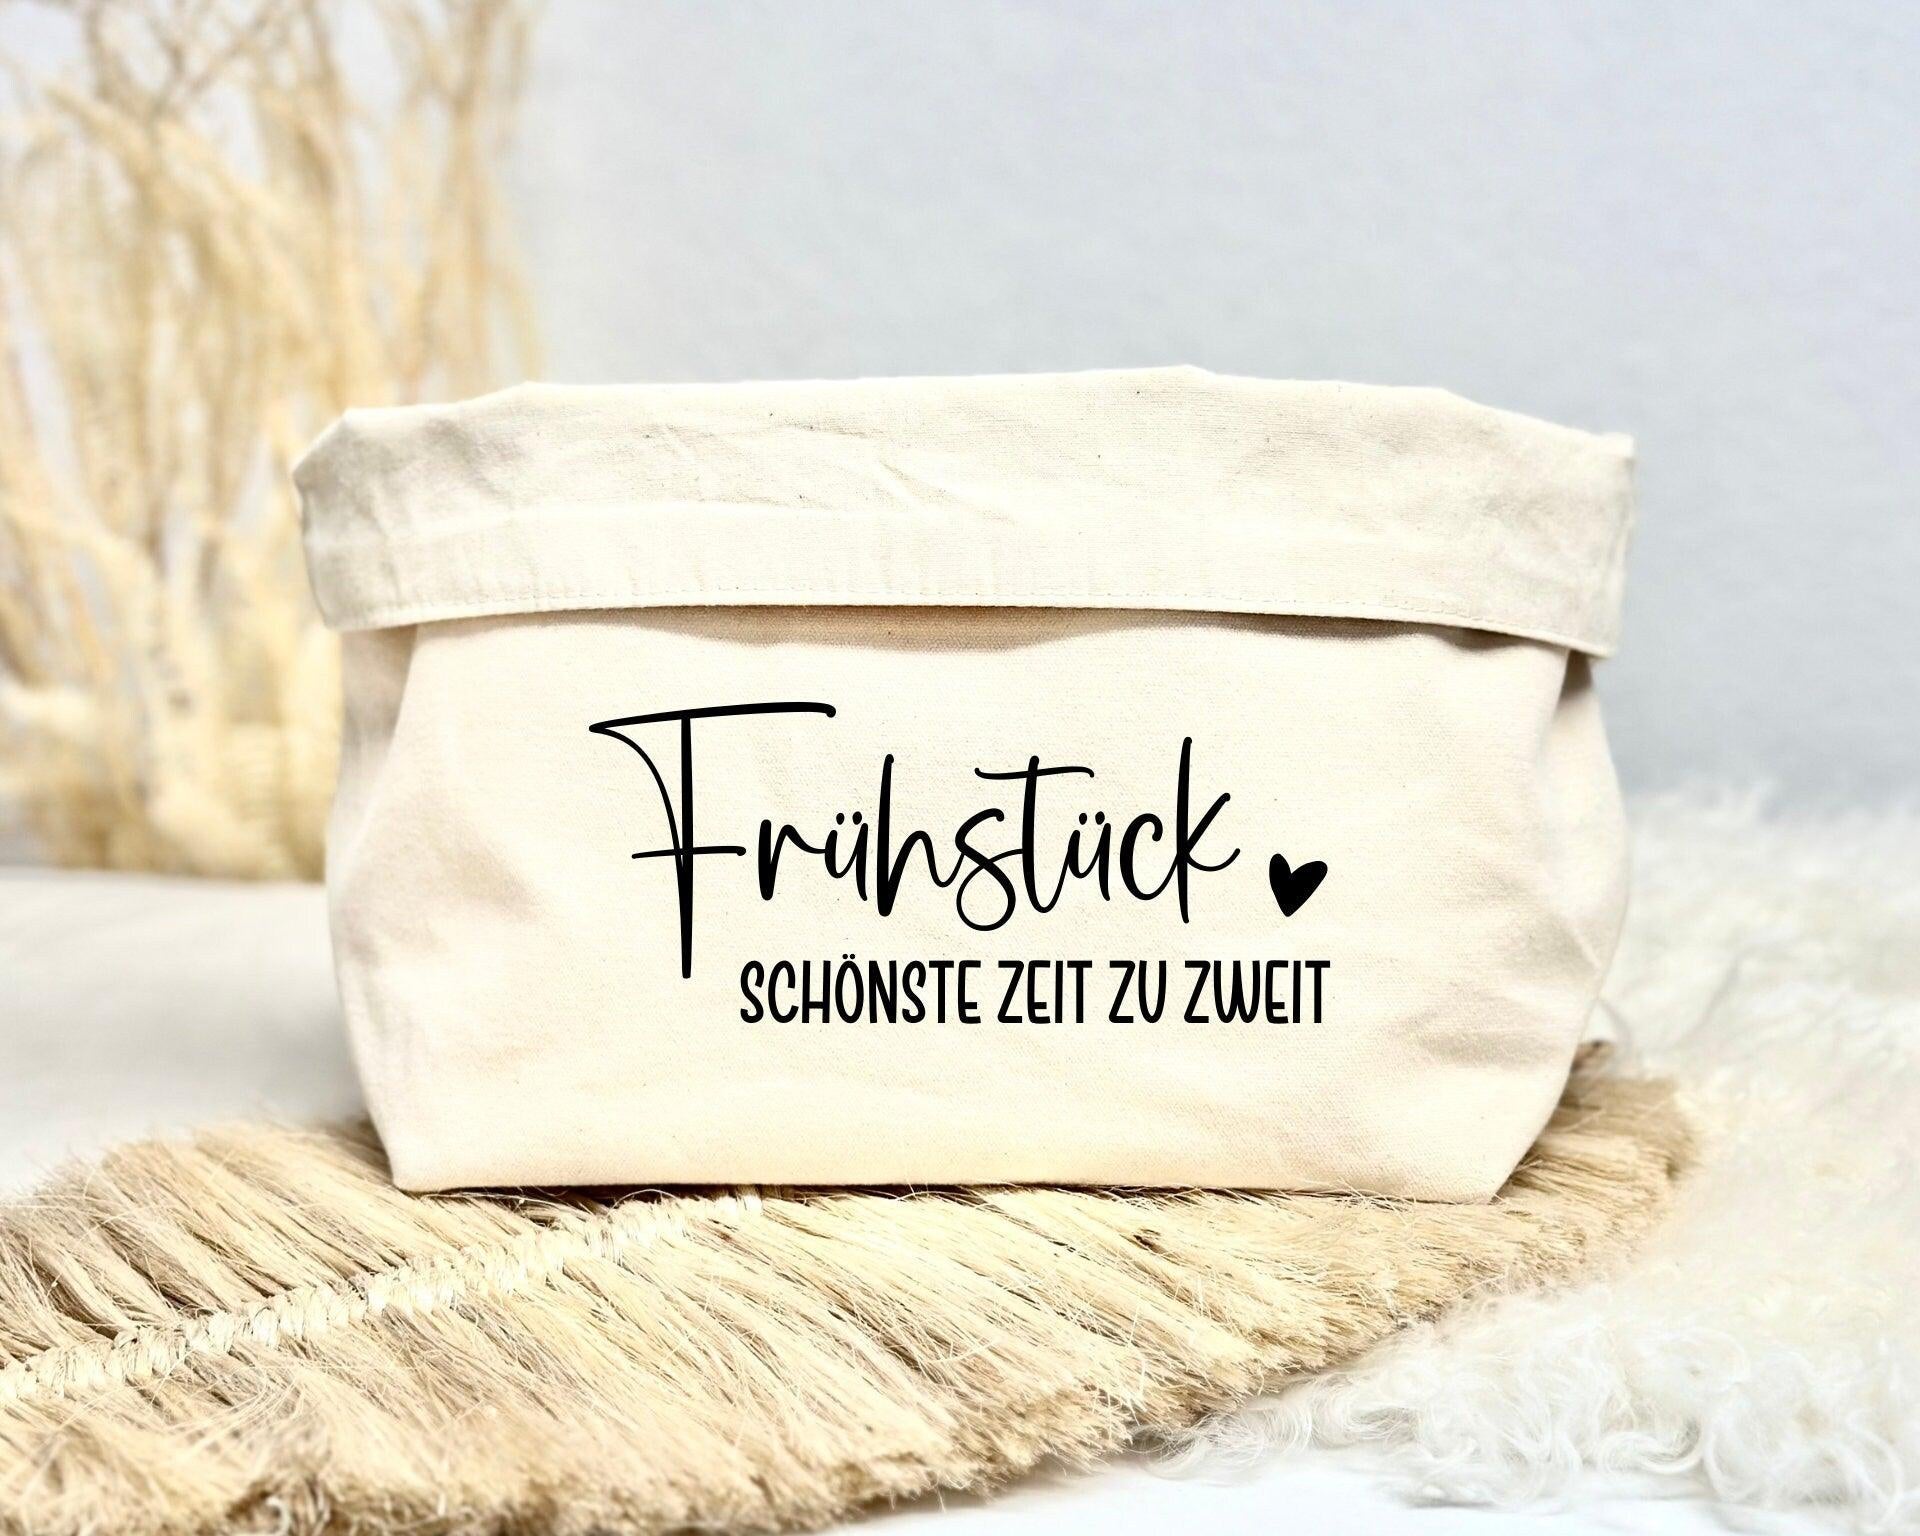 Brotkörbchen Brotkorb mit Namen personalisiert - Roo's Gift Shop